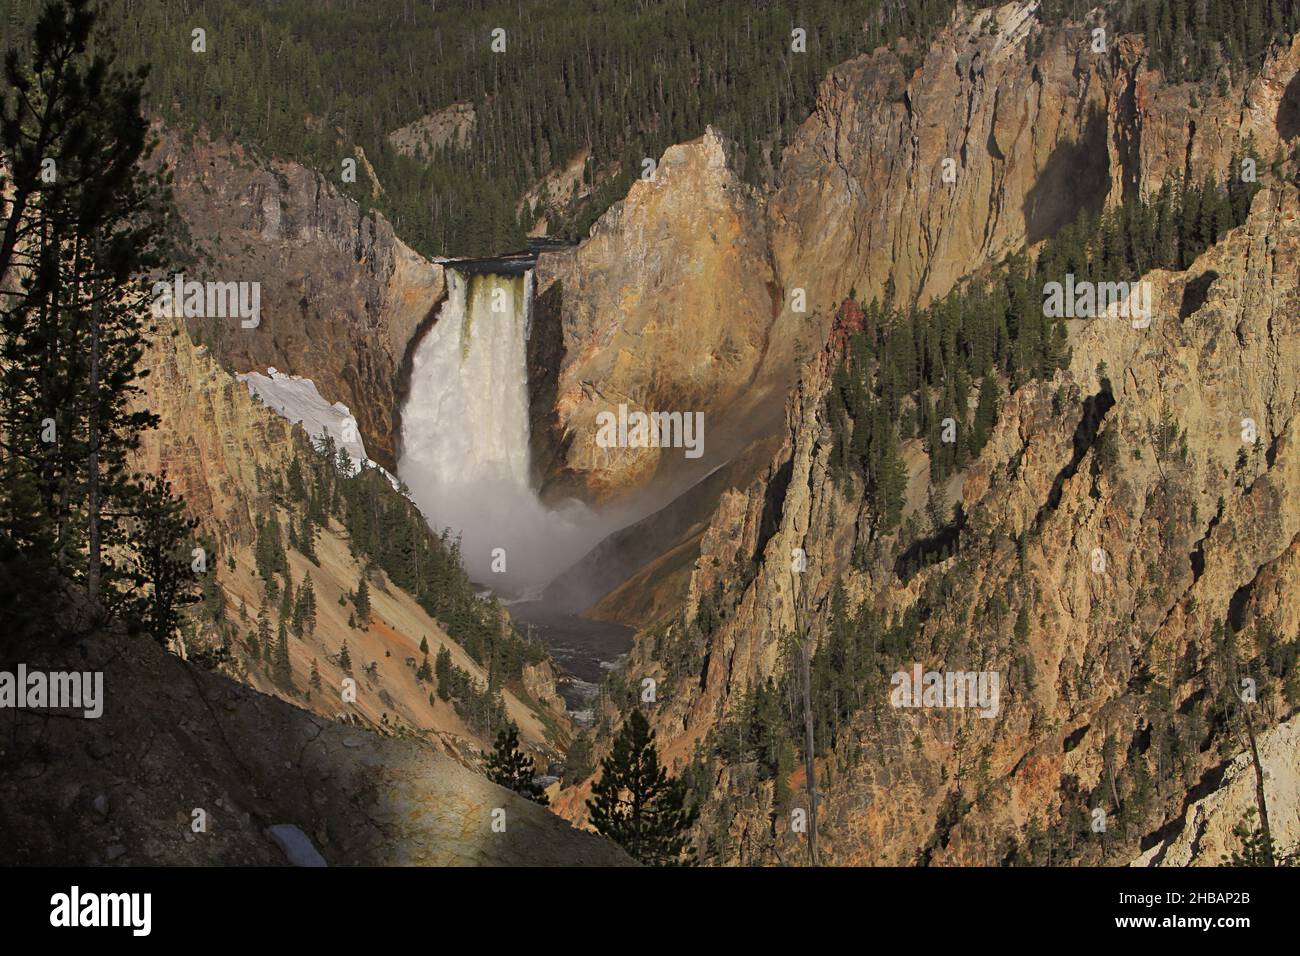 Cascate inferiori del fiume Yellowstone, parco nazionale di Yellowstone. Una versione unica e ottimizzata di un'immagine NPS, Credit: NPS/J.. Peaco Foto Stock